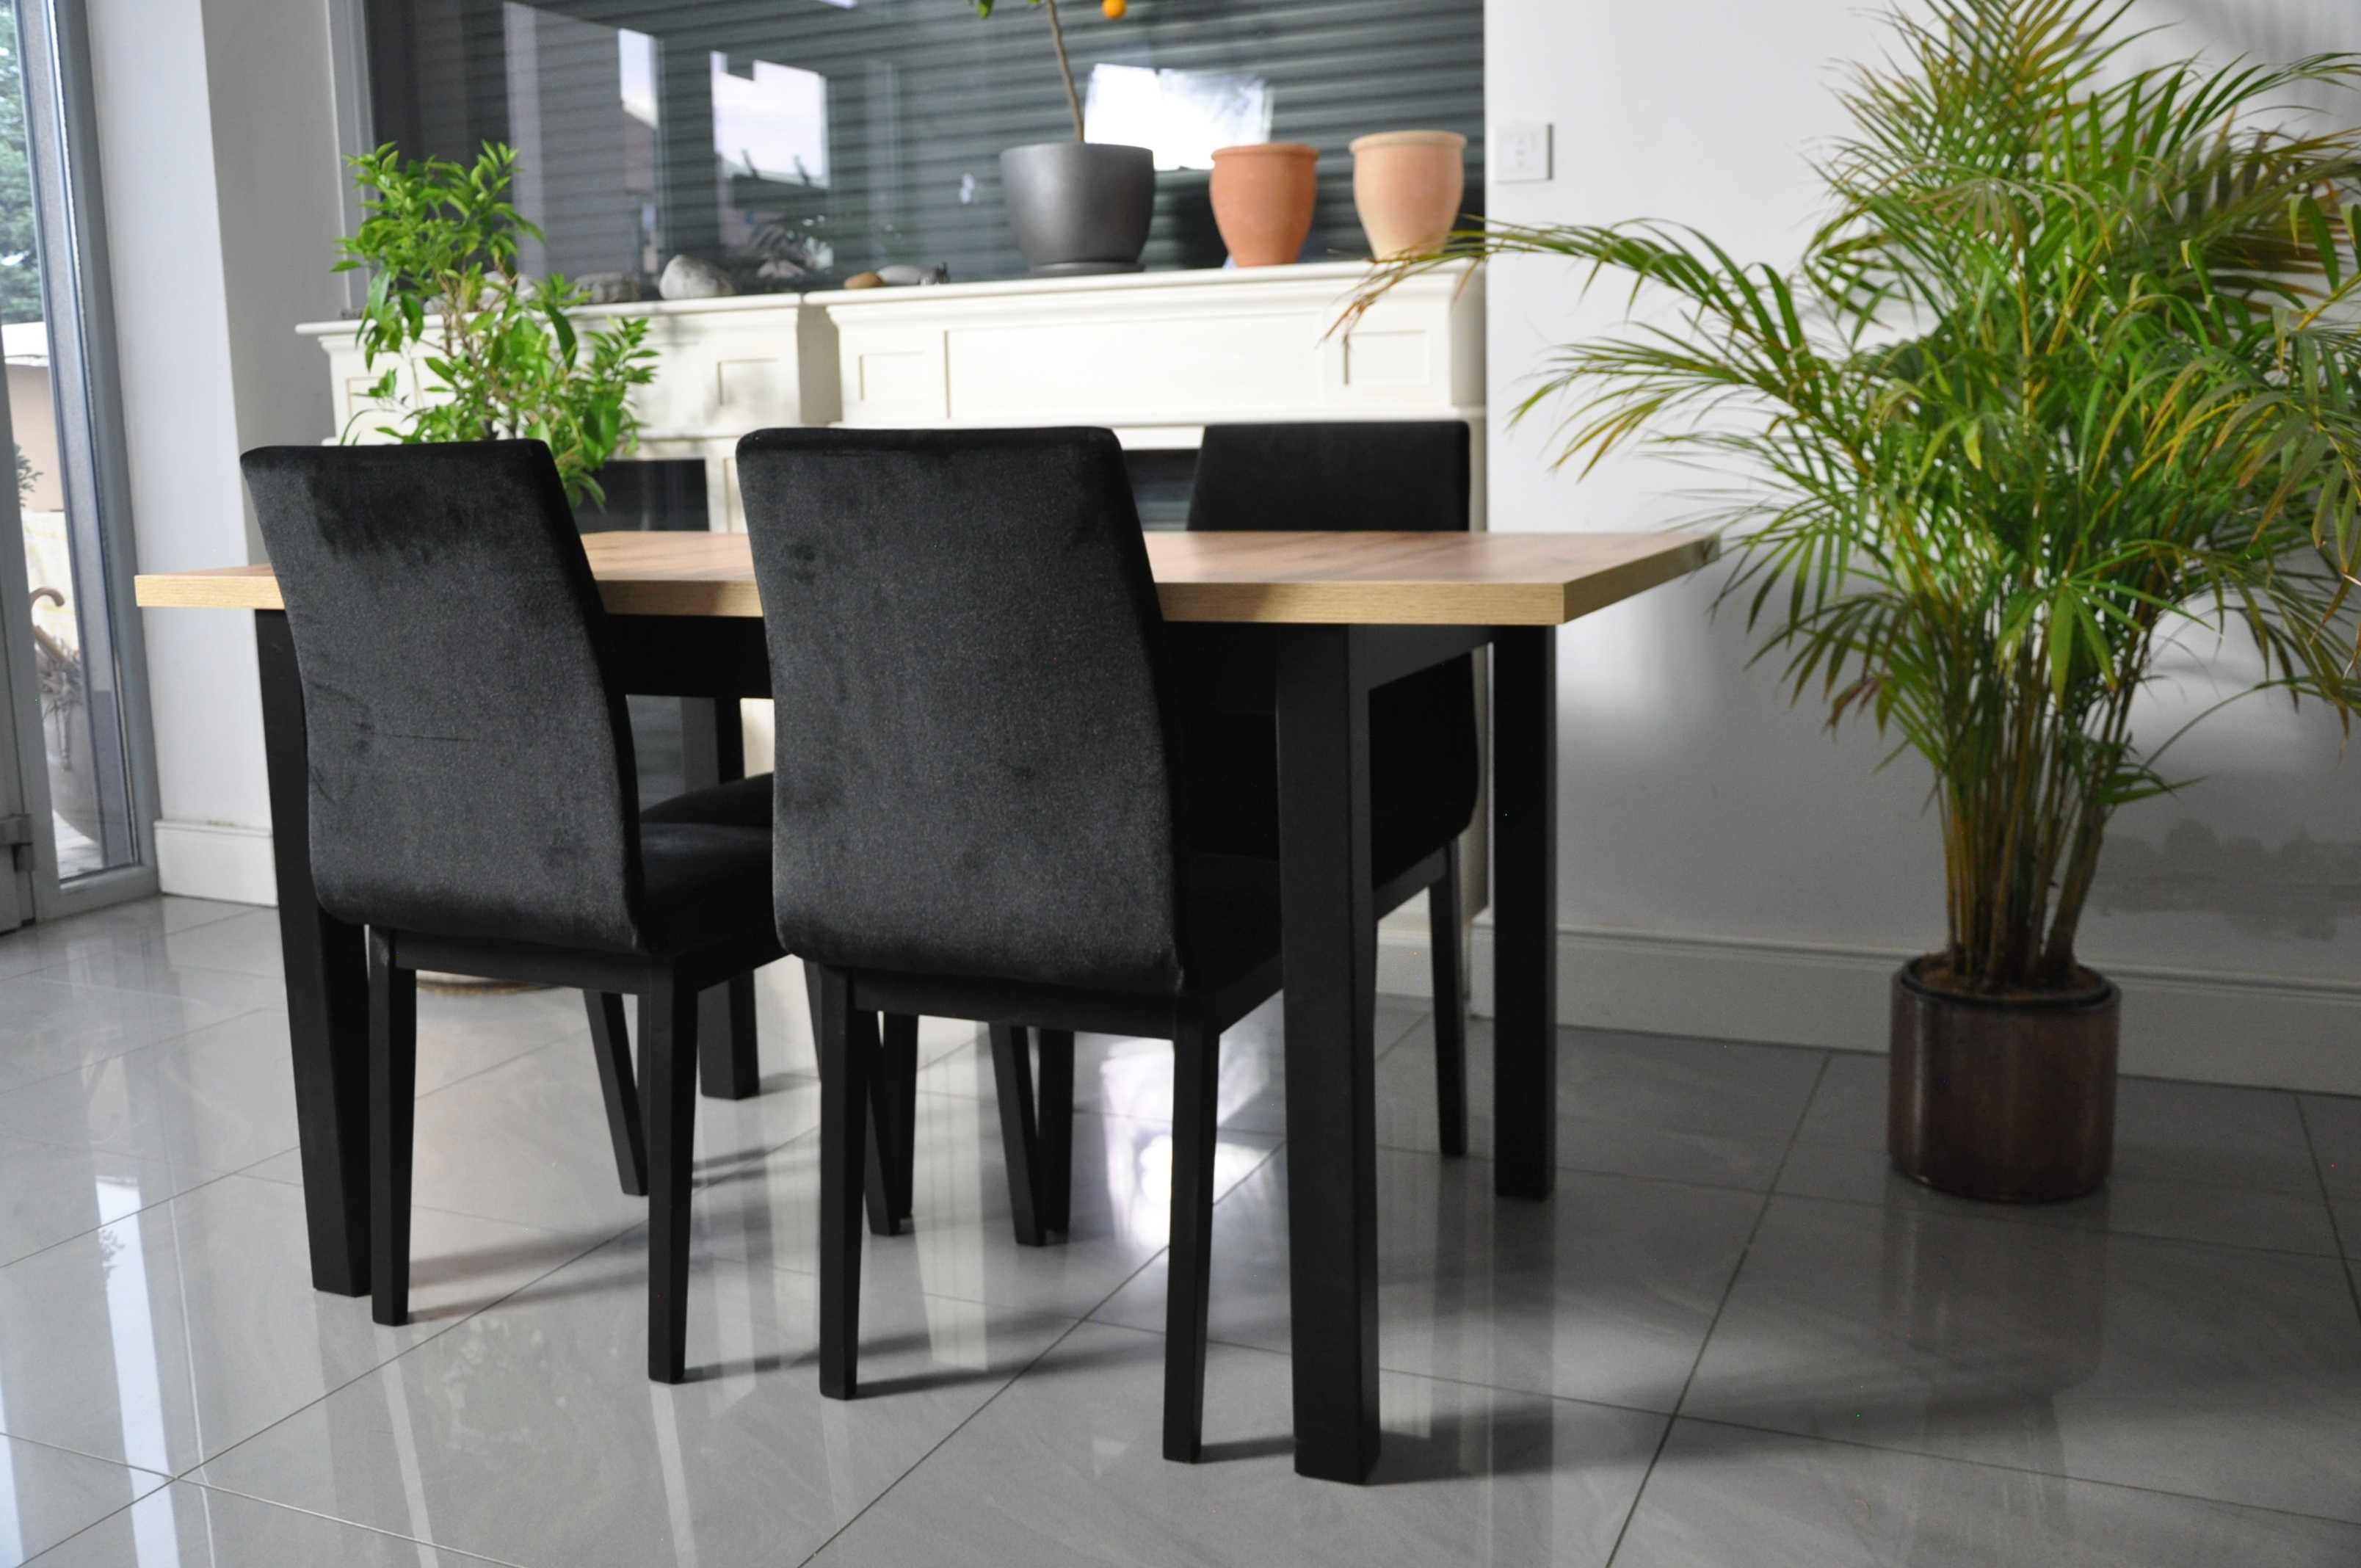 PROMOCJA - Zestaw Elegant Stół Rozkładany + Krzesła